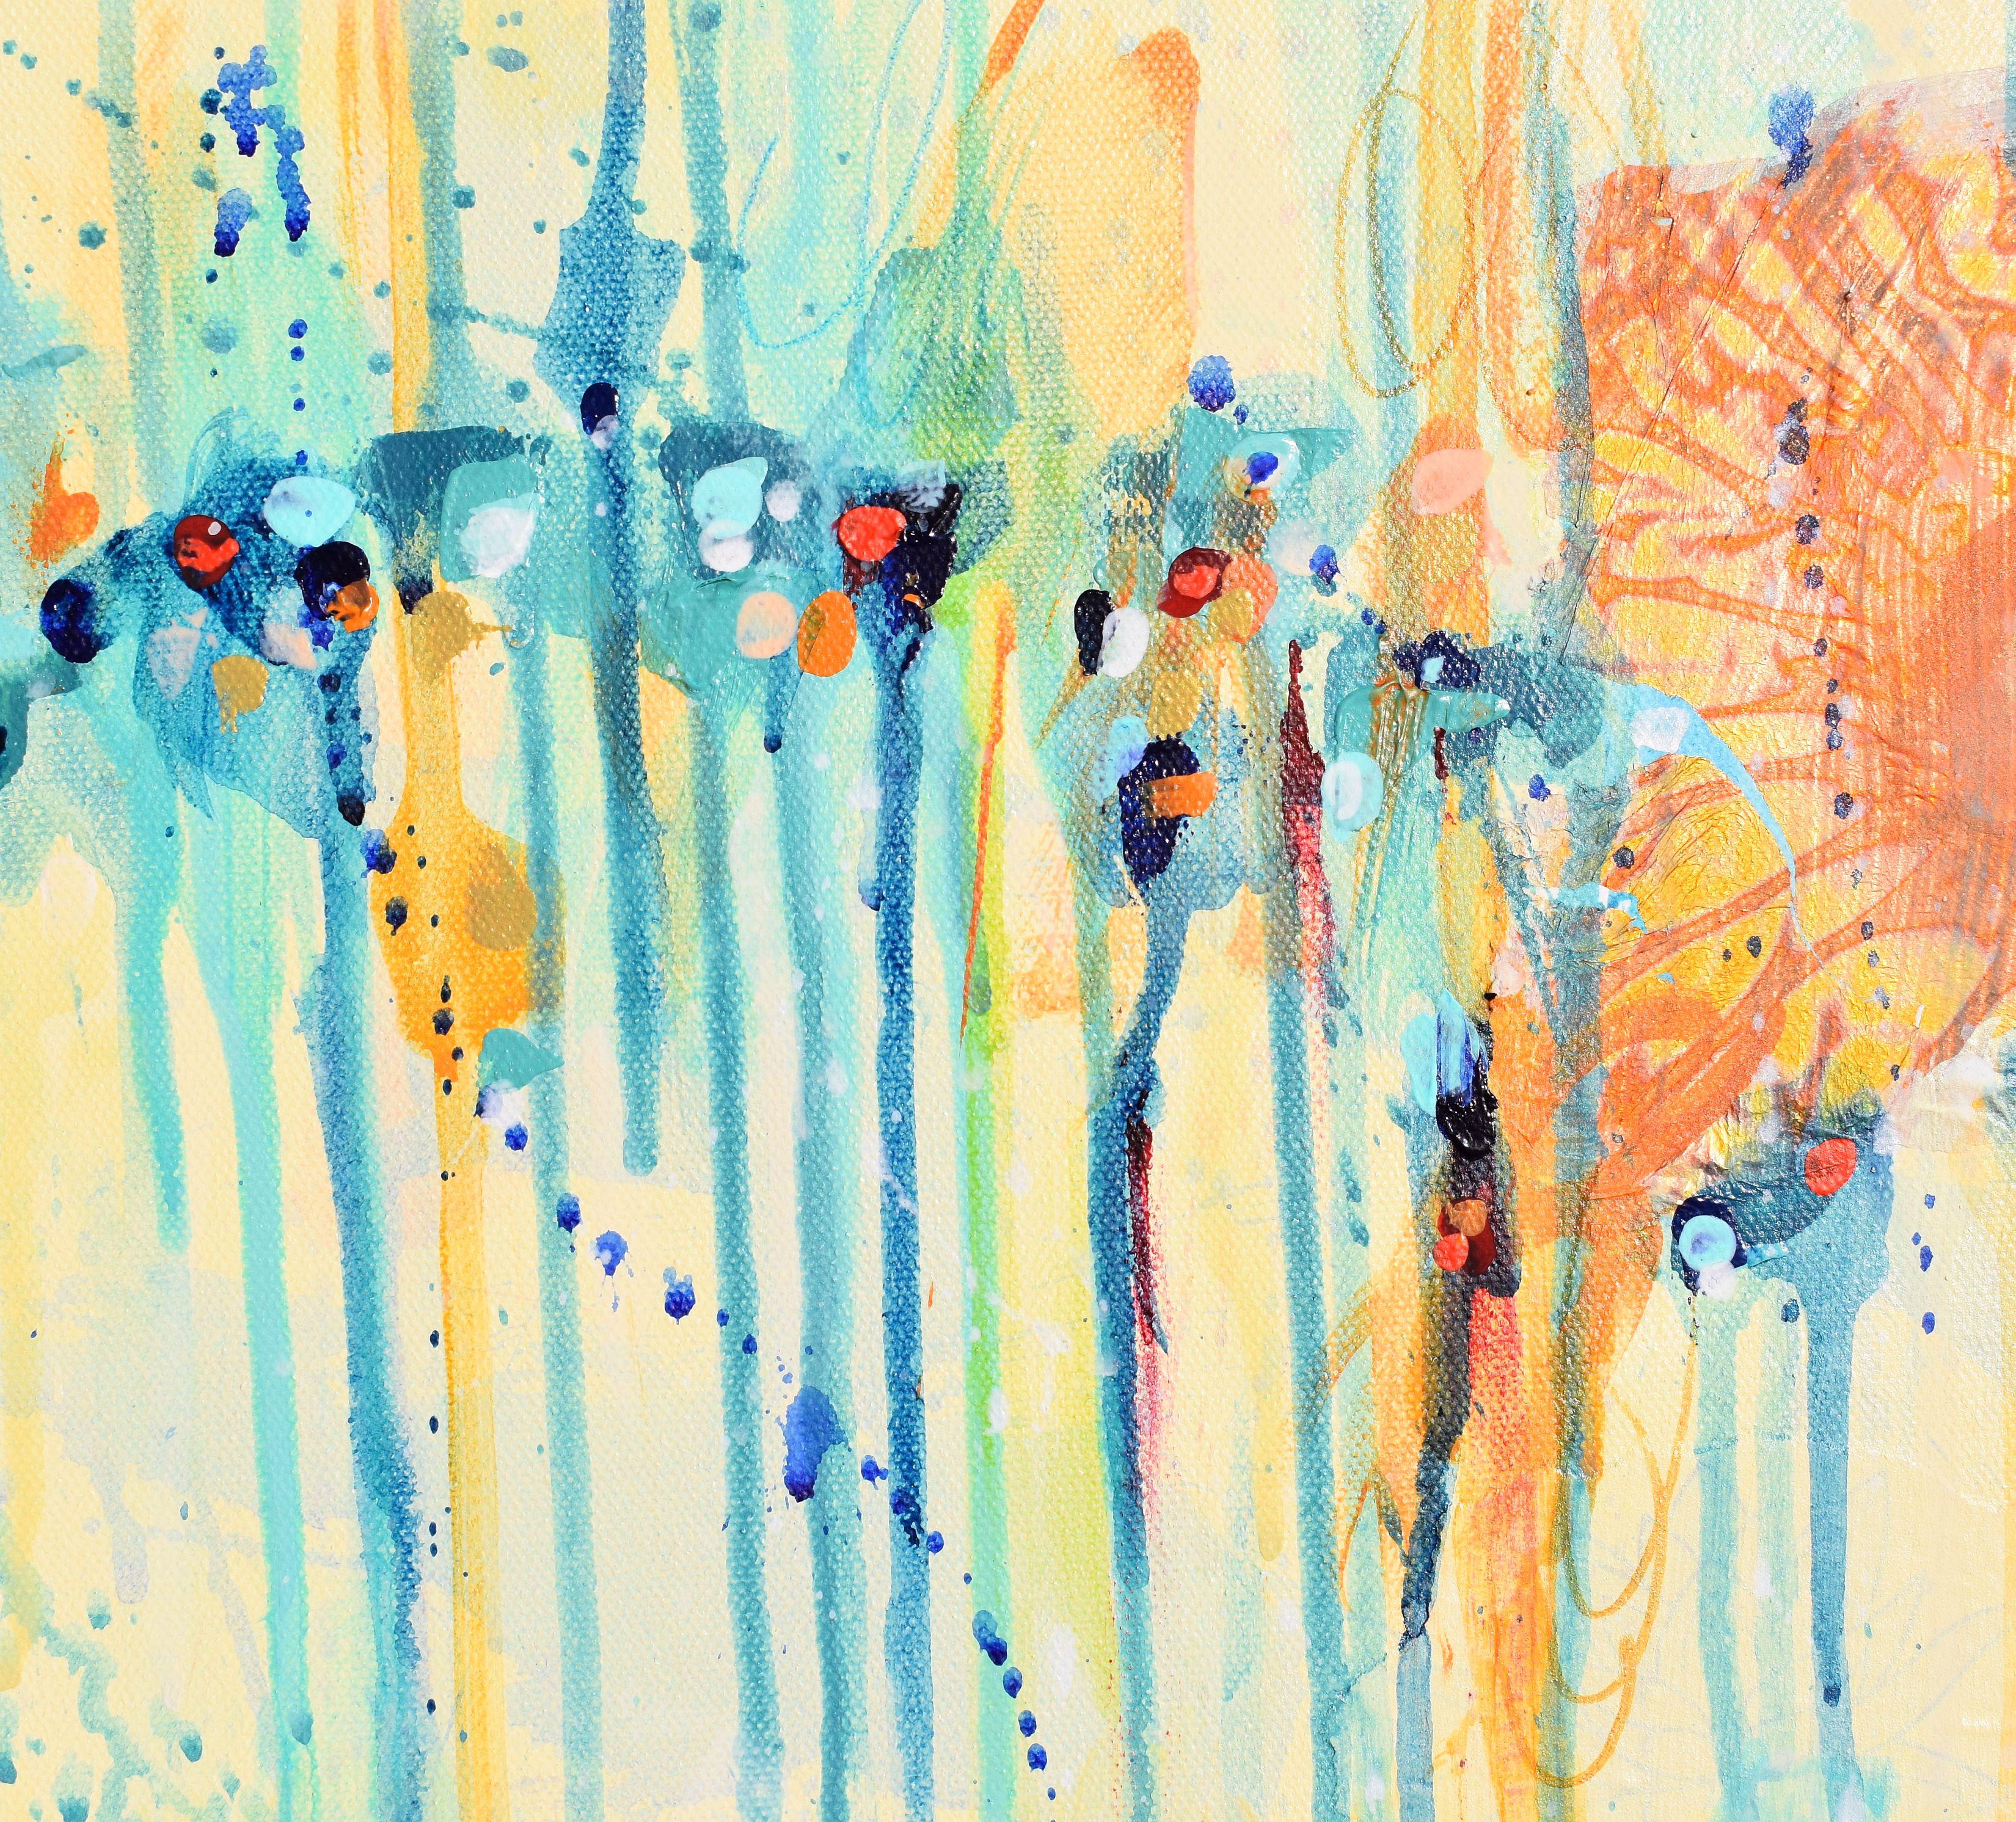 <p>Commentaires de l'artiste<br>L'artiste Cynthia Ligeros présente un abstrait panoramique d'un crépuscule d'hiver lunatique. Les teintes de bleu et de jaune scintillent dans toute la composition. Elle s'inspire des couleurs et des sentiments